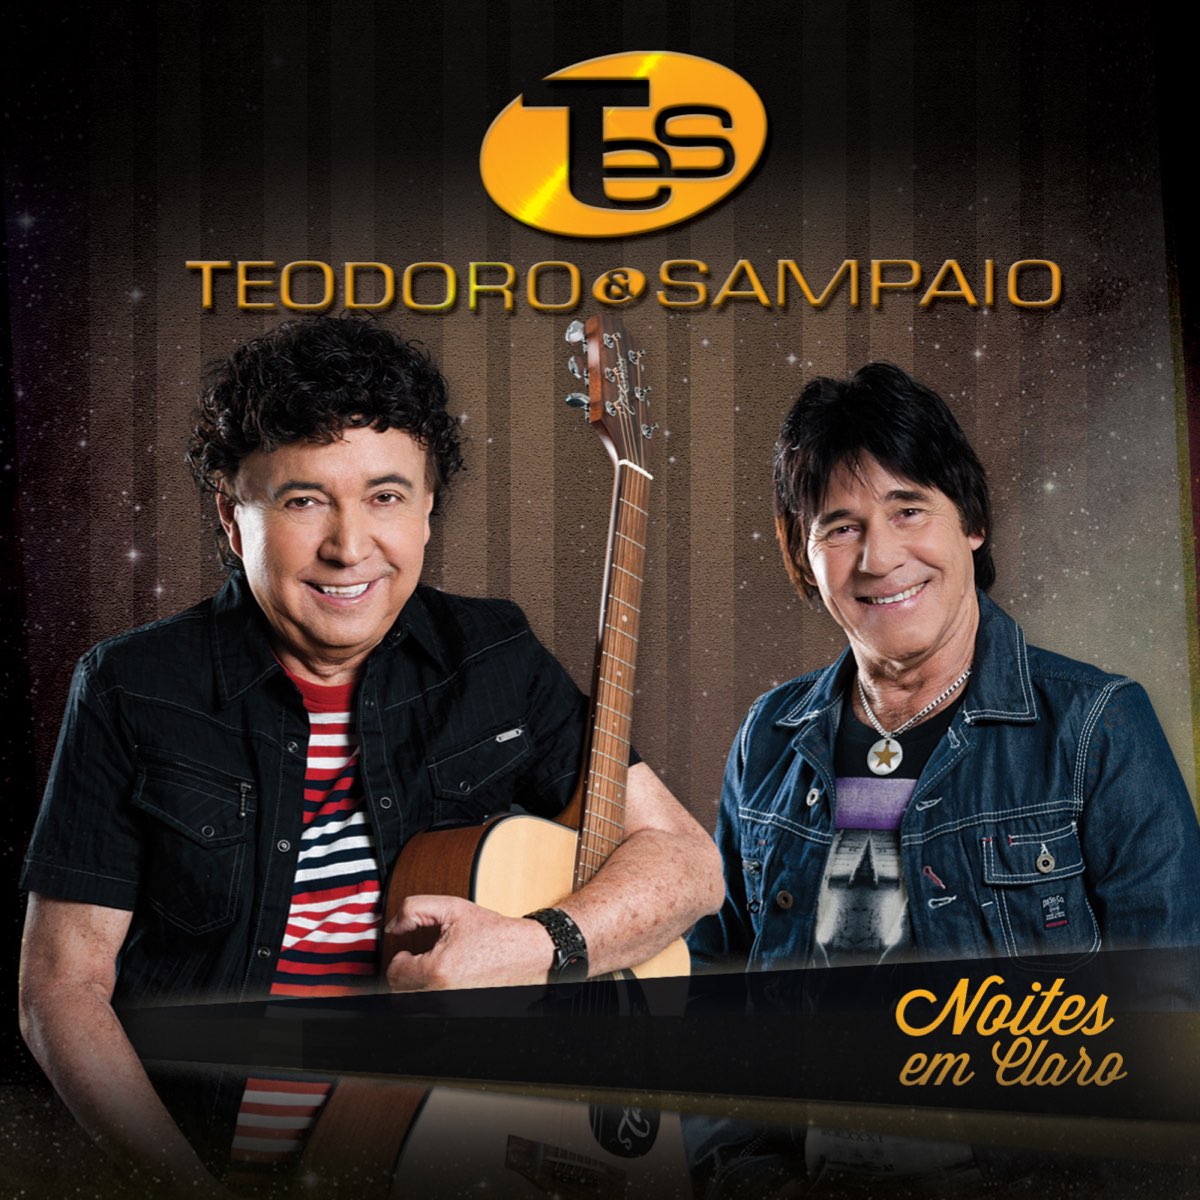 Noites em Claro - Album by Teodoro & Sampaio - Apple Music